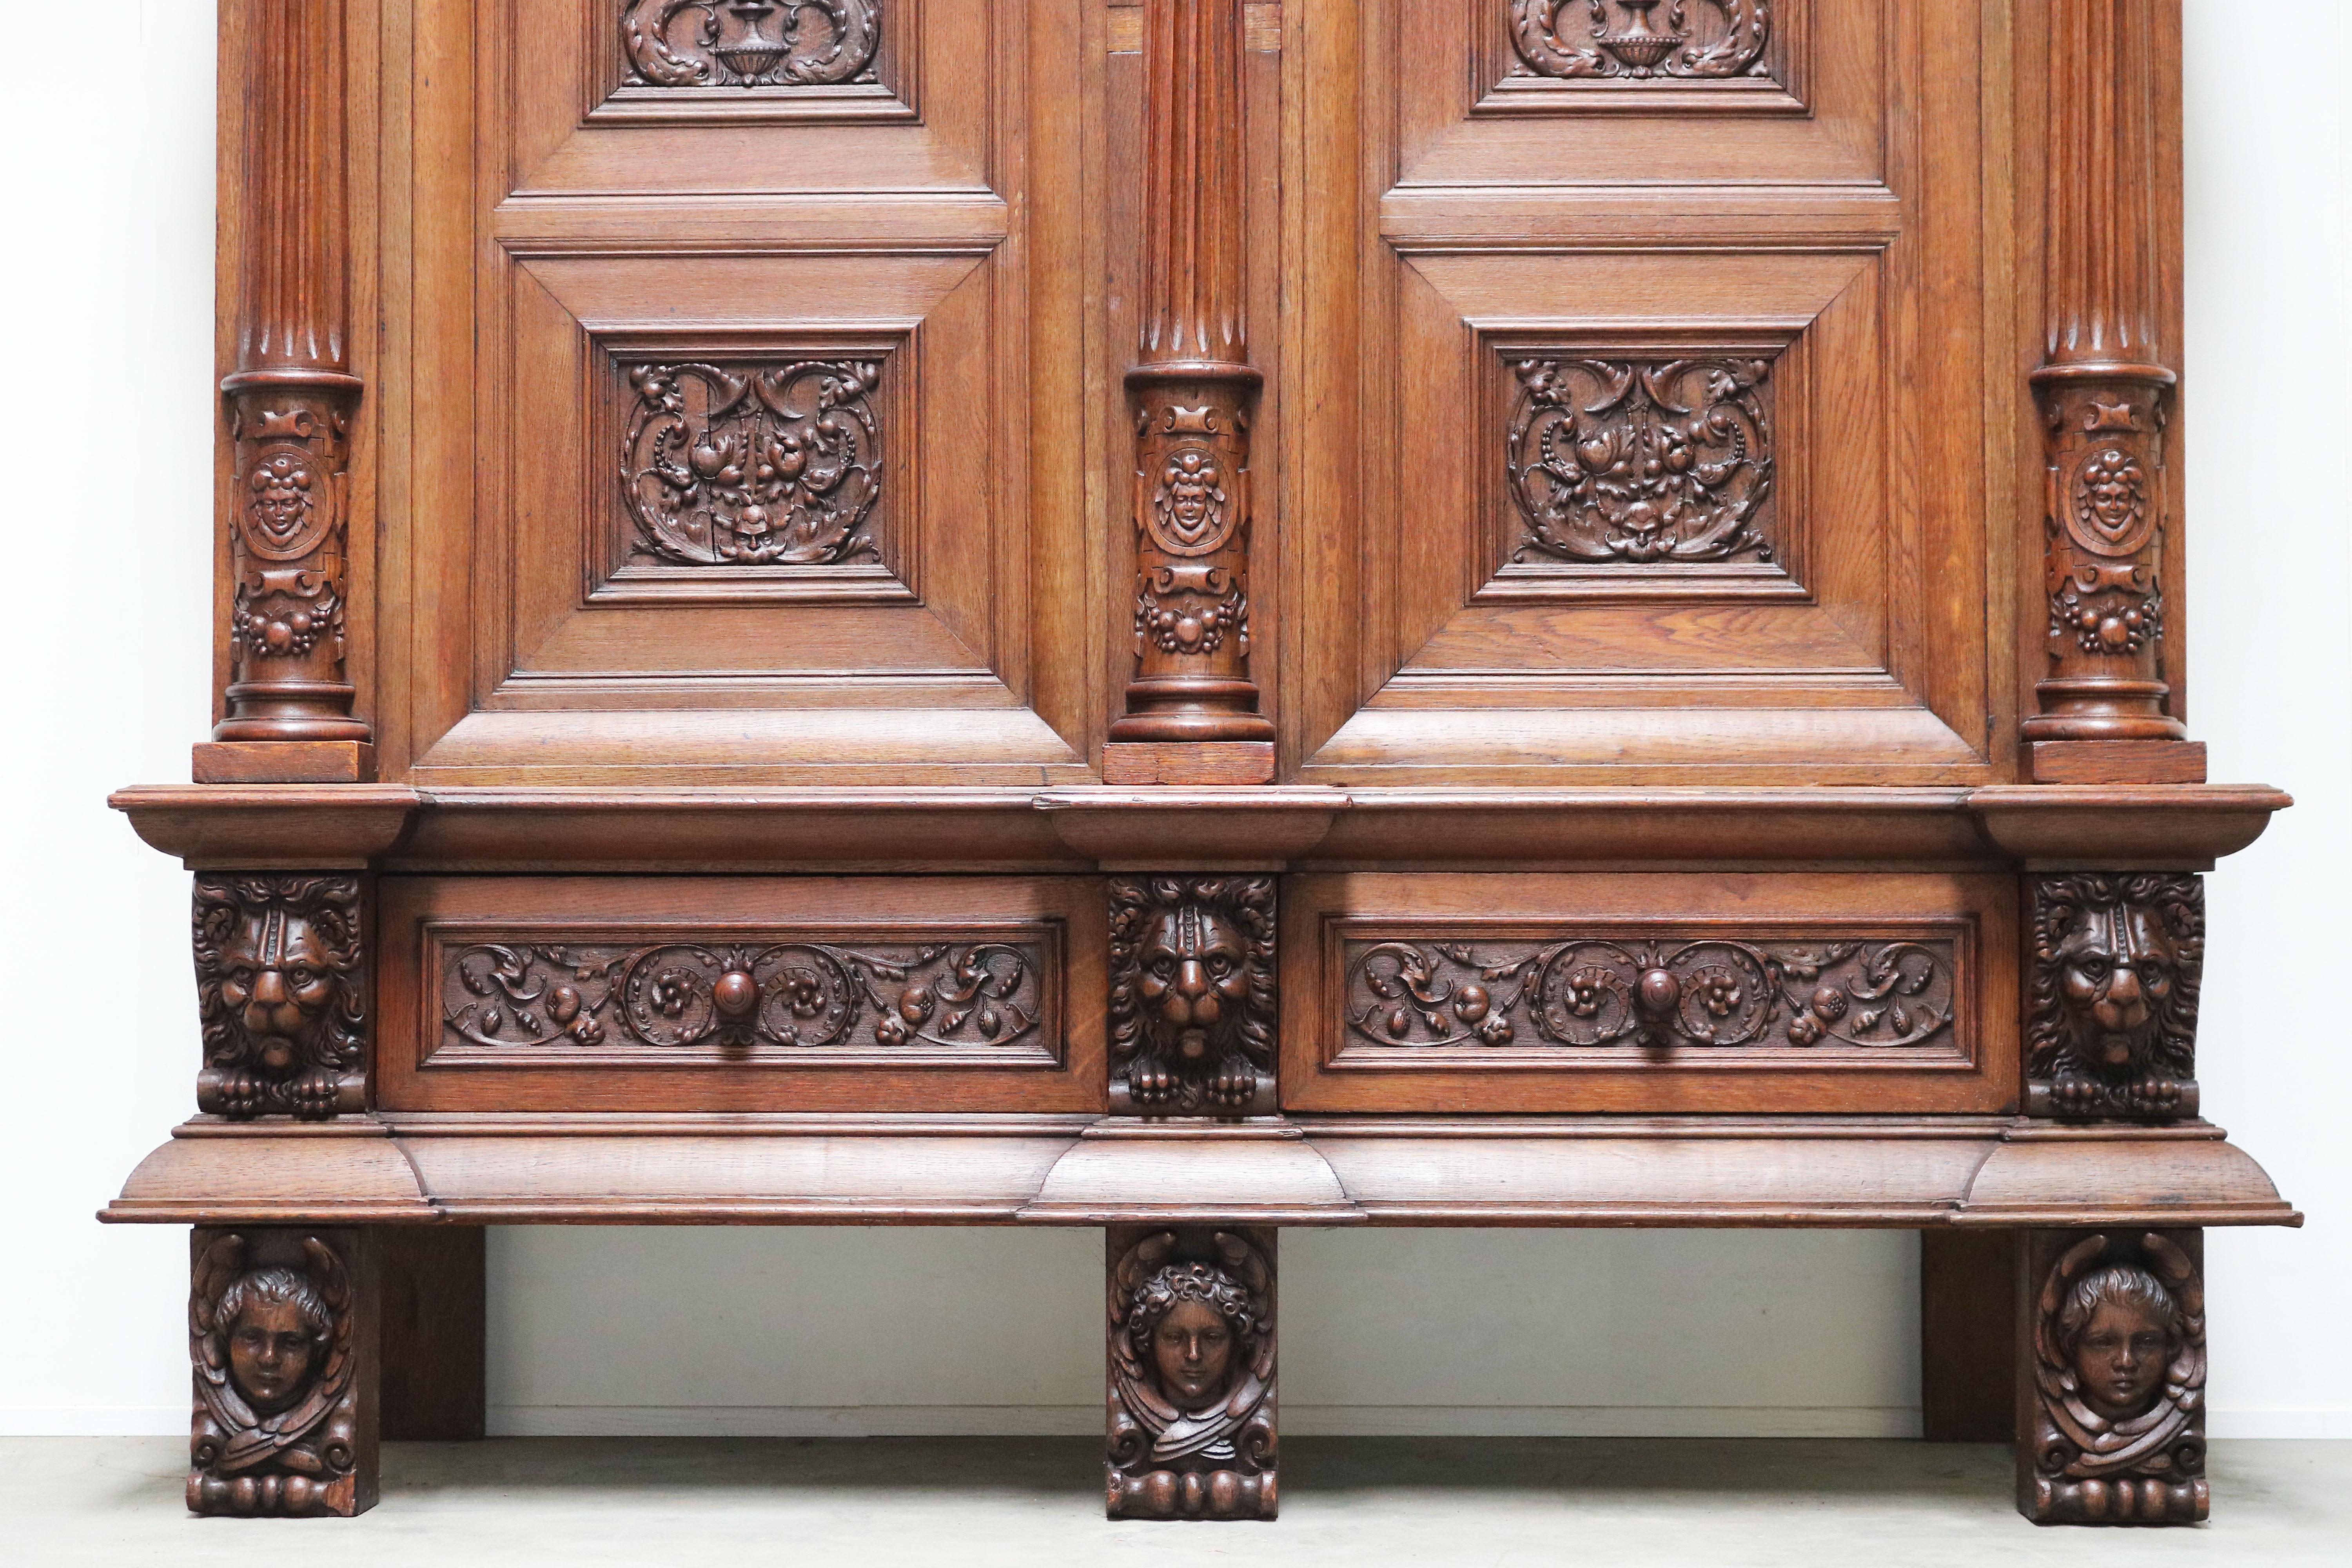 Impressive Dutch Renaissance Revival 19th Century Cabinet Carved Angels & Lions For Sale 8